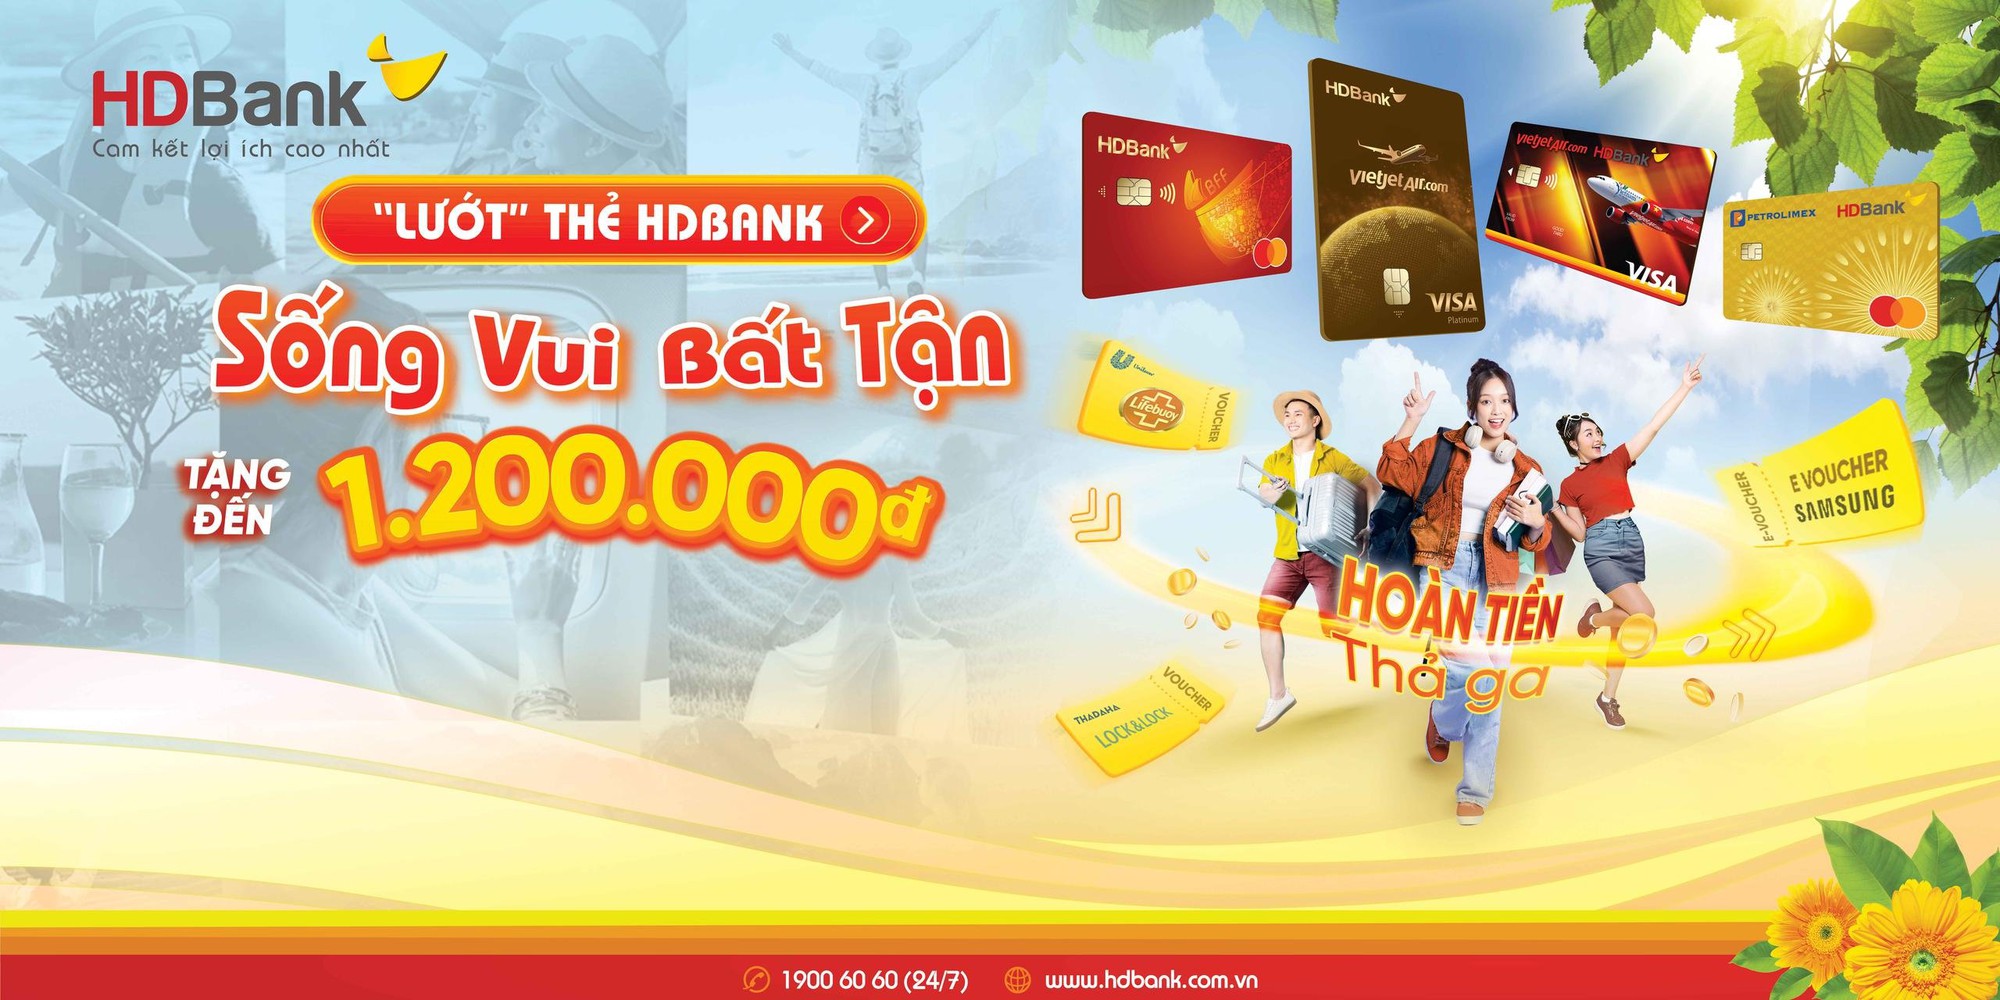 HDBank mang 100.000 voucher giảm giá độc quyền 50% từ Samsung đến “Sóng Festival”  - Ảnh 2.